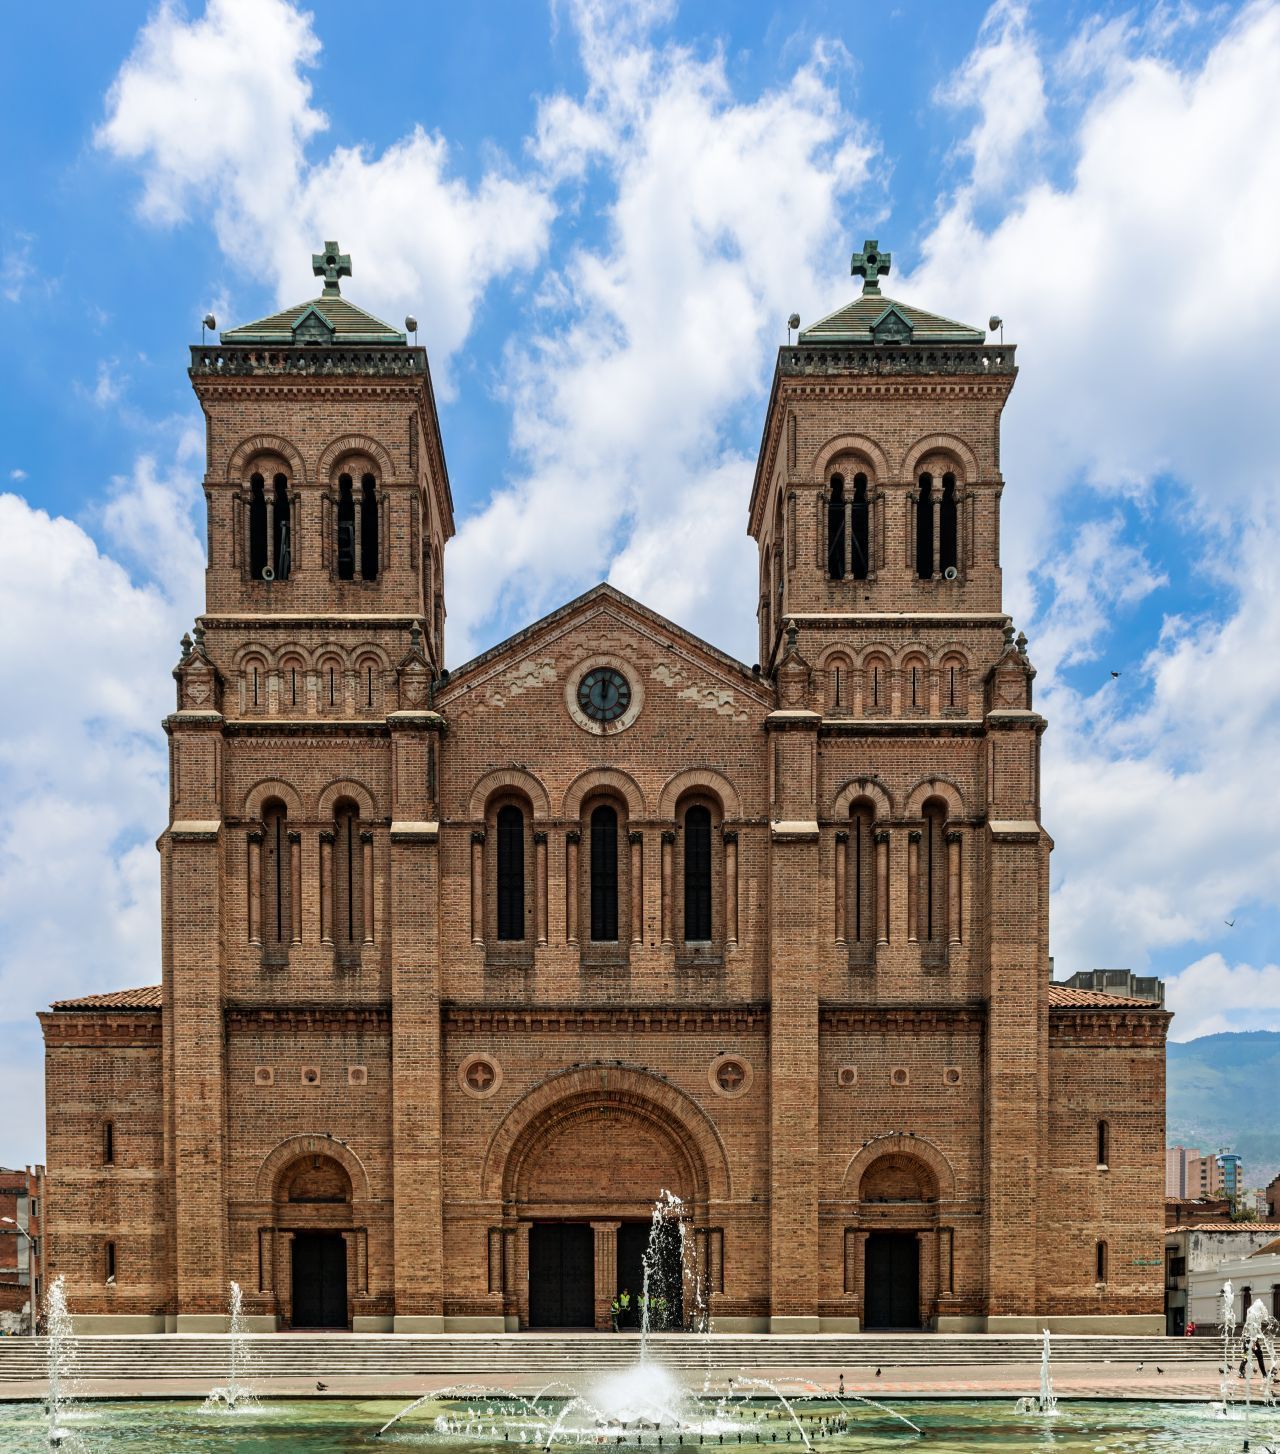 Die neuromanische Basilika des Erzbistums besteht aus Lehmziegeln und ist 53 Meter hoch. Die Fläche beträgt 5.000 Quadratmeter. 1890 wurde mit dem imposanten Sakralbau begonnen, fertiggestellt wurde er 1931 und liegt am Parque de Bolivar.